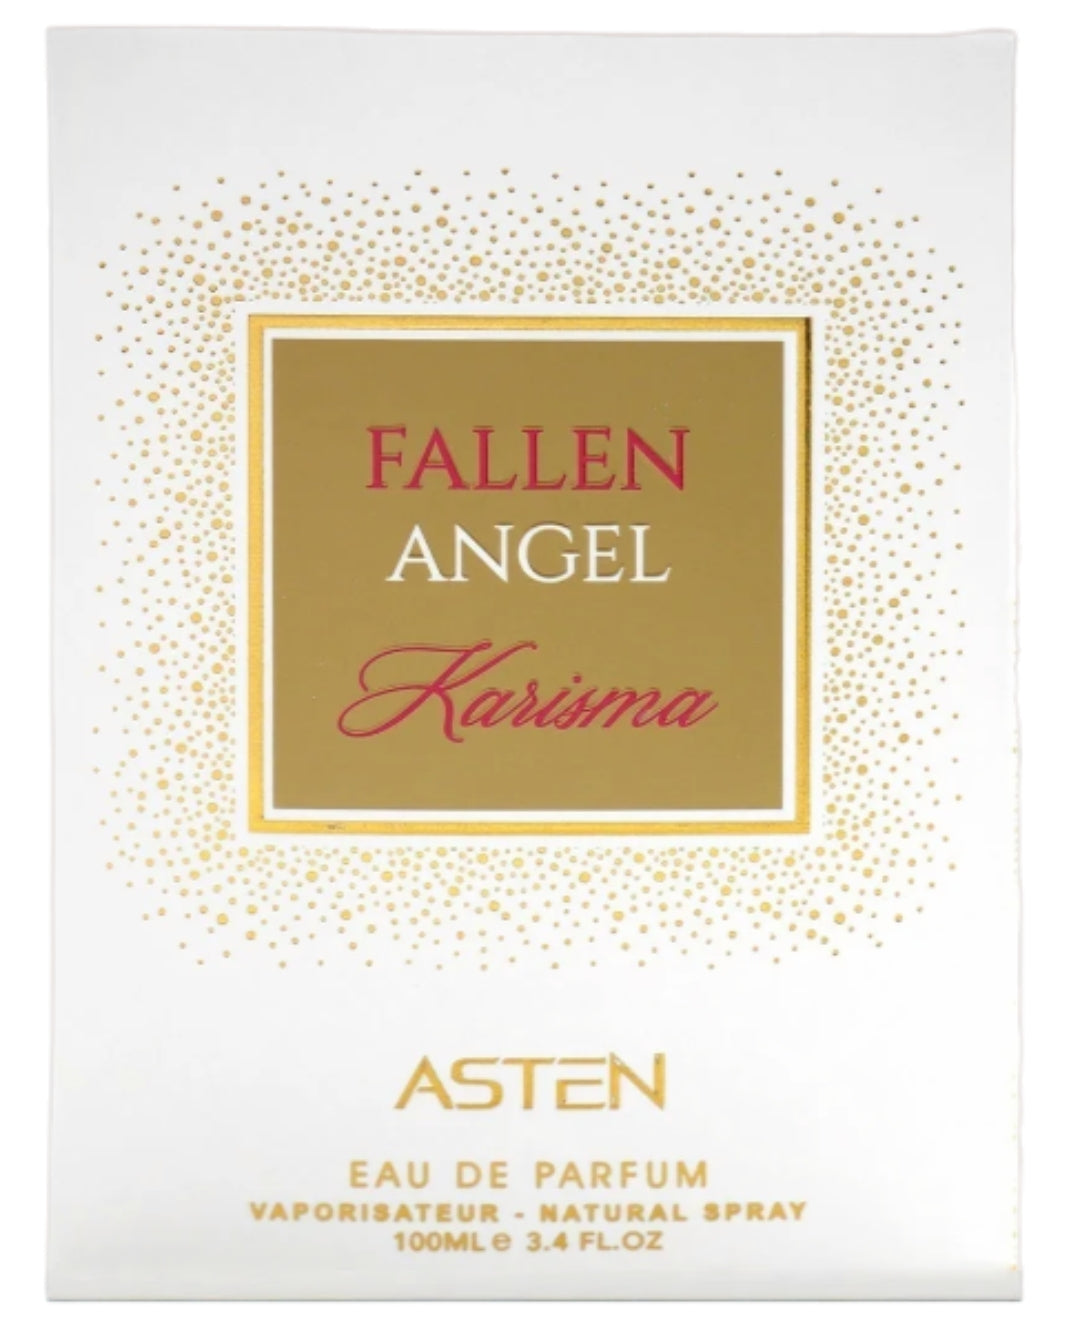 Fallen Angel Karisma By Asten Unisex Eau De Parfum 3.4 Oz: A Symphony of Allure